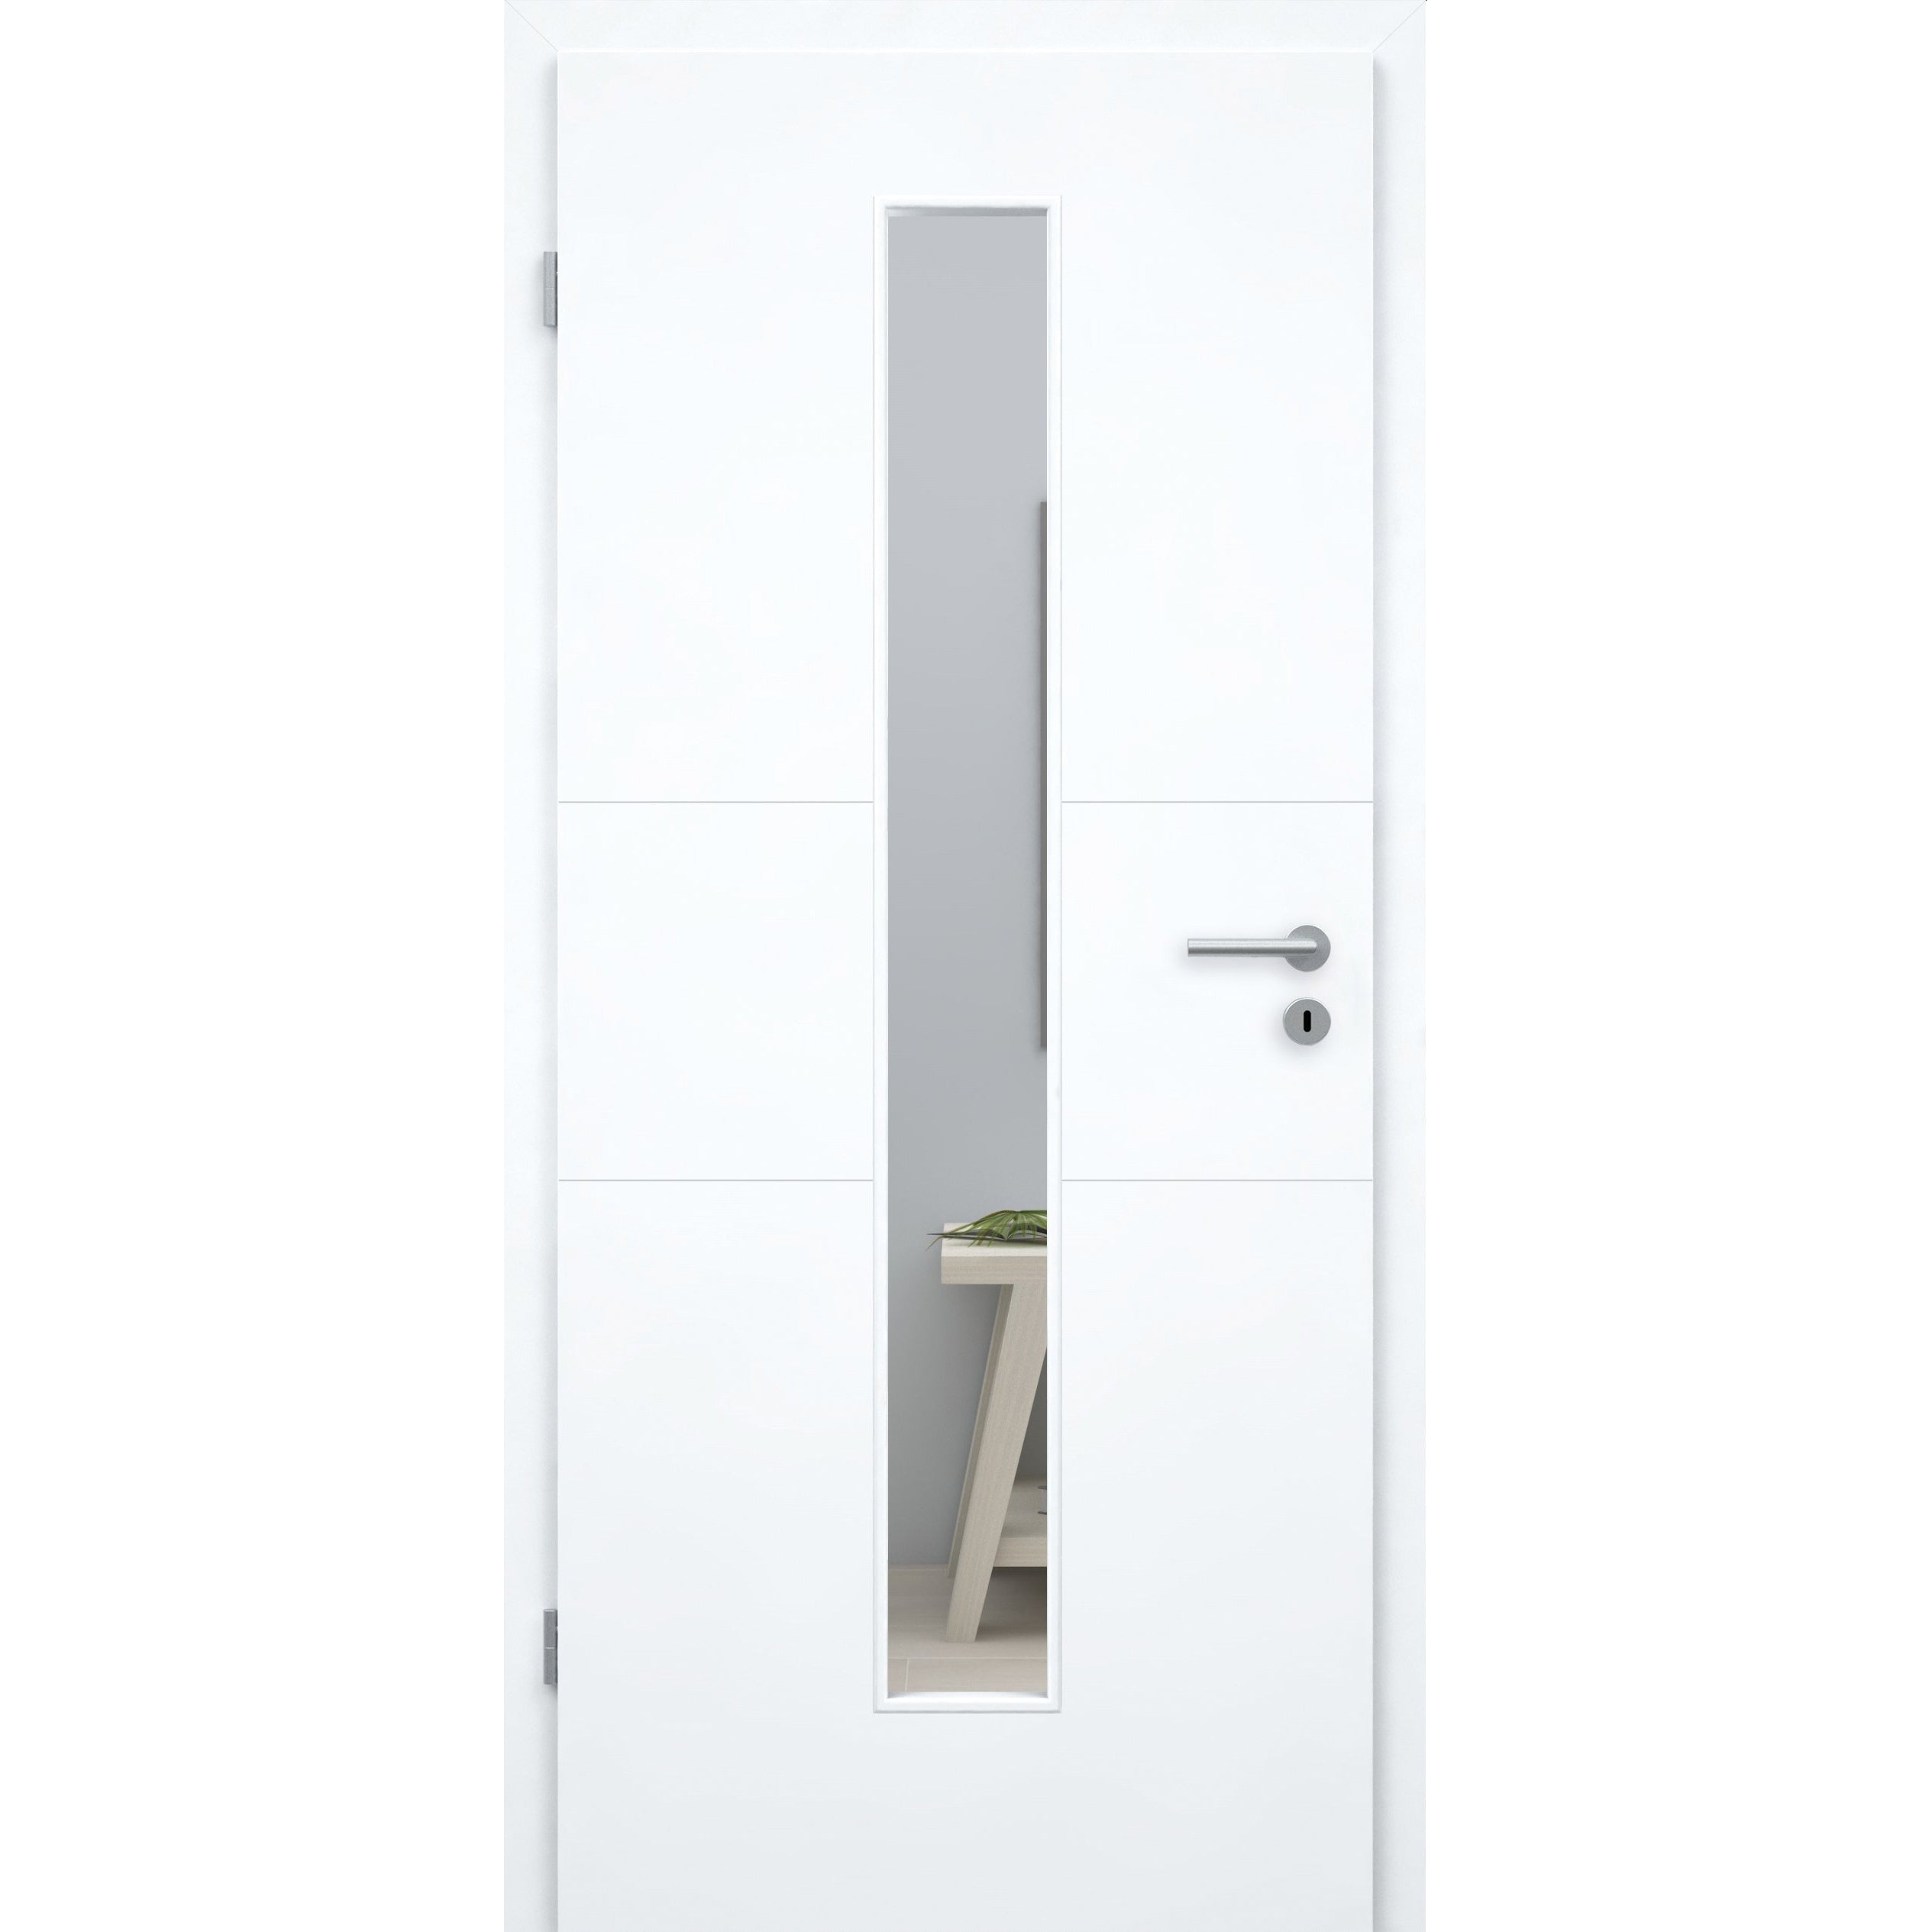 Zimmertür mit Lichtausschnitt brillant-weiß 2 Rillen quer Designkante - Modell Designtür Q23LAM